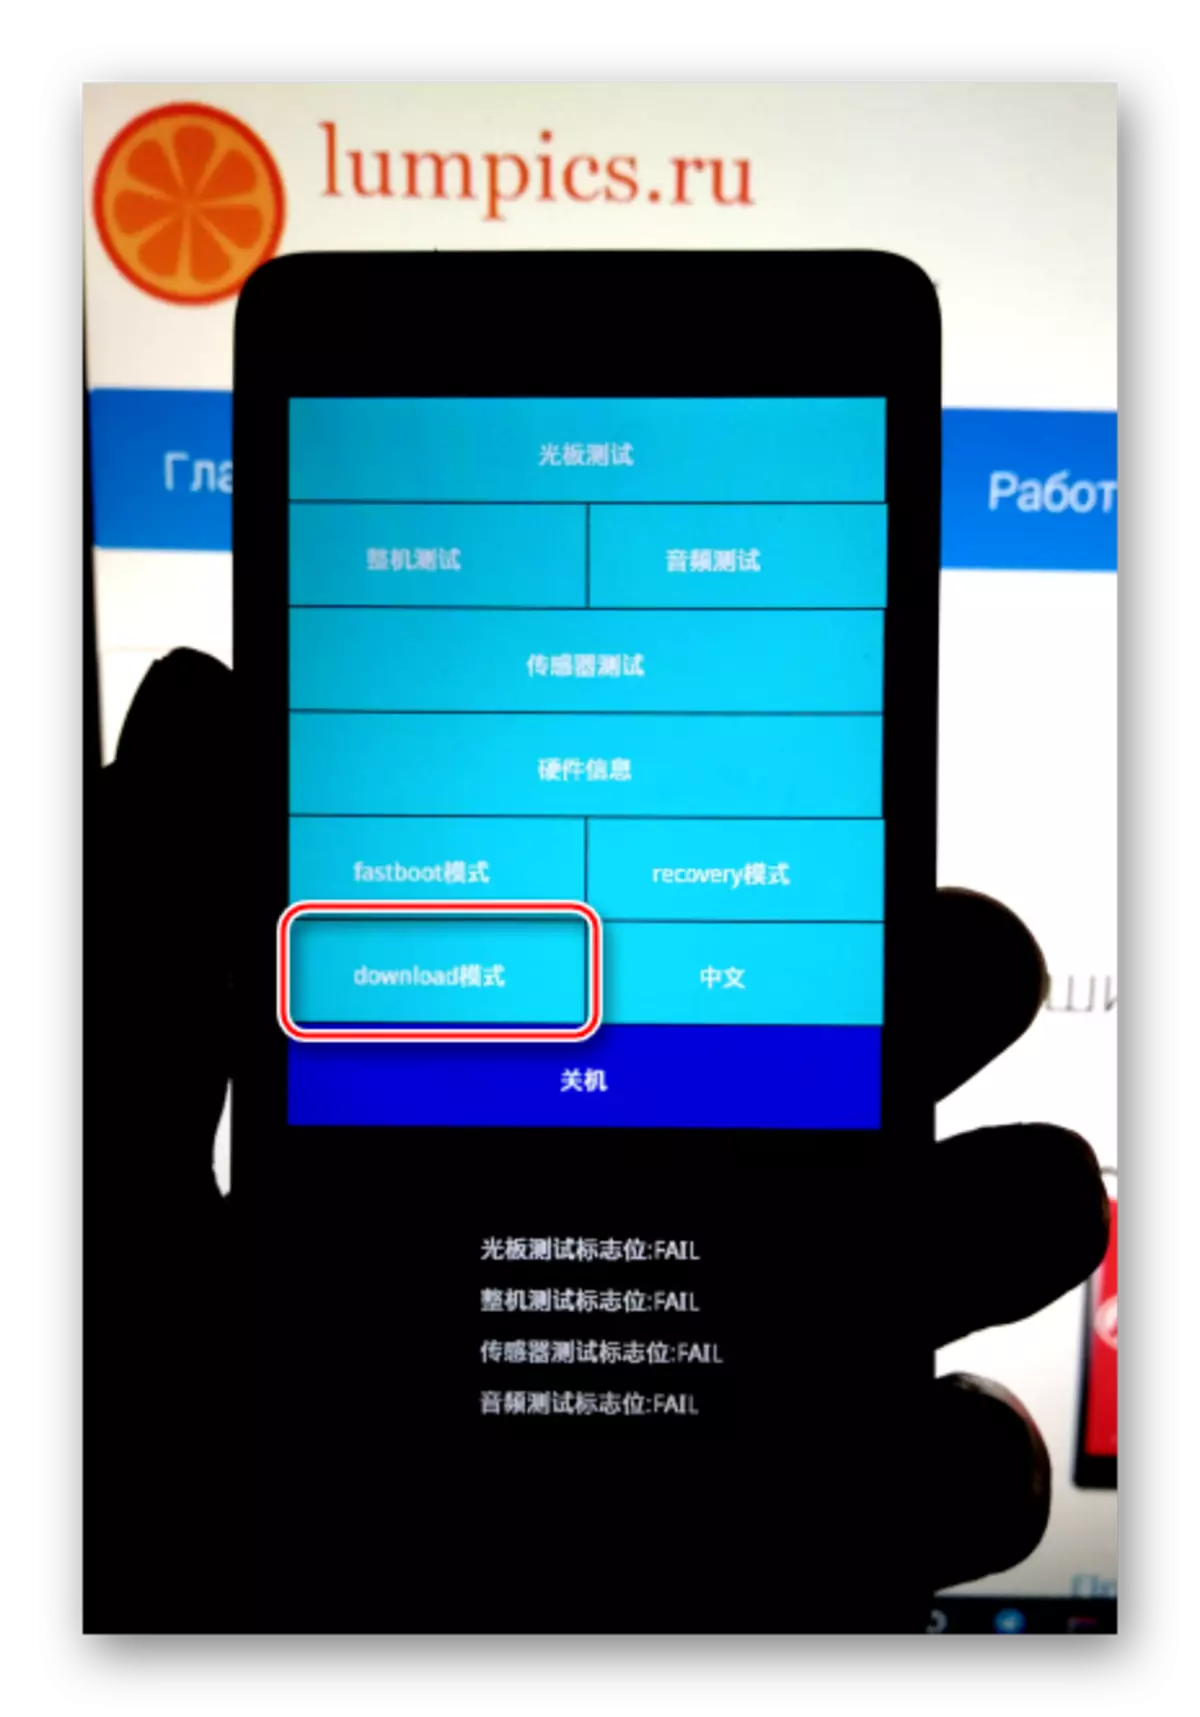 Xiaomi Redmi 2 oblije chanje nan mòd download soti nan prelader la